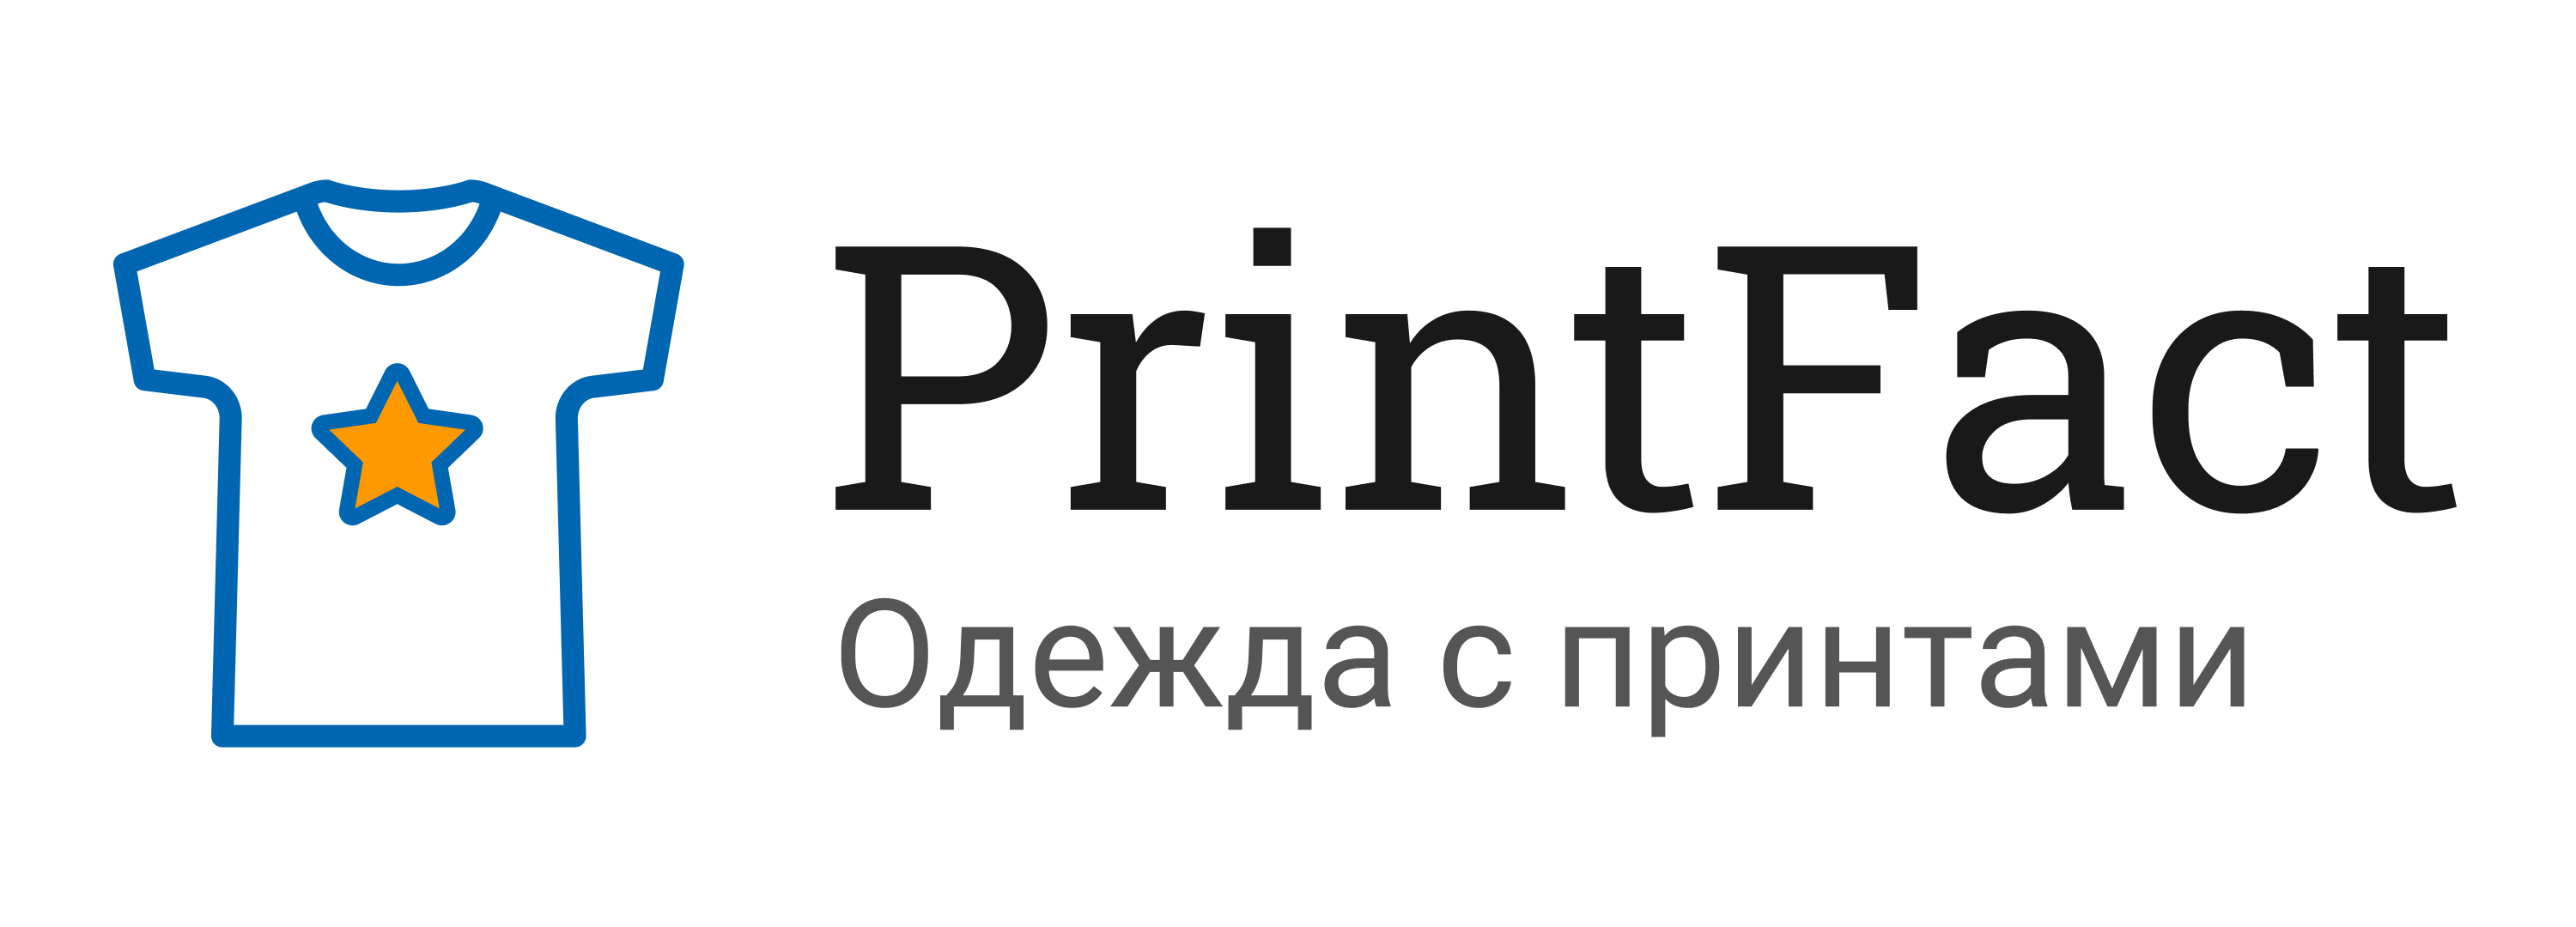 Логотип PrintFact.ru - стильная и модная верхняя одежда с принтами для мужчин, женщин и детей